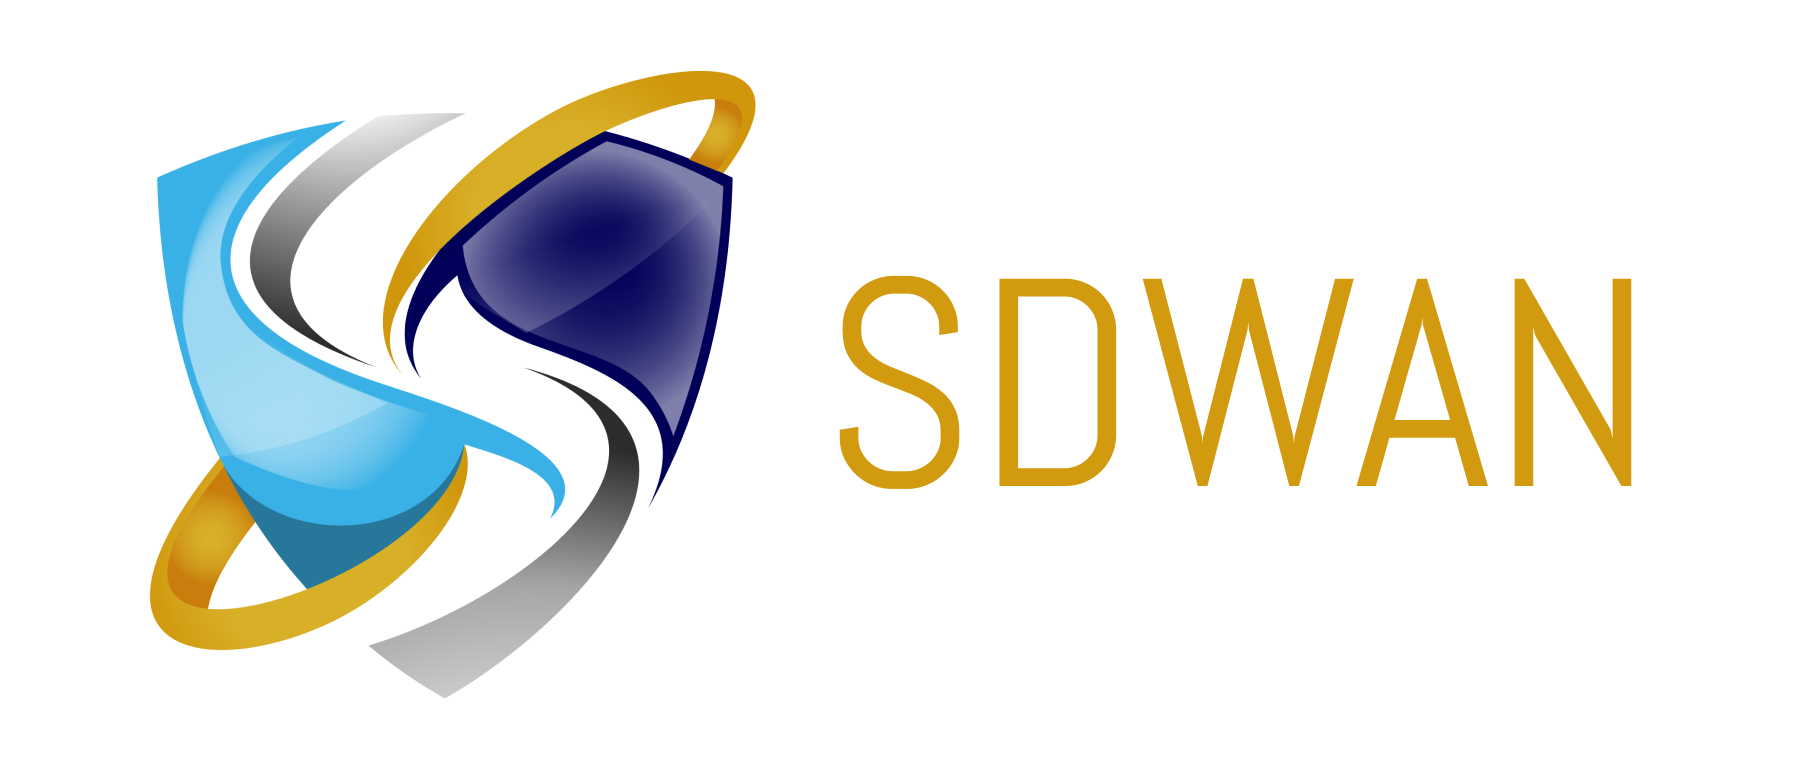 SDWAN 로고